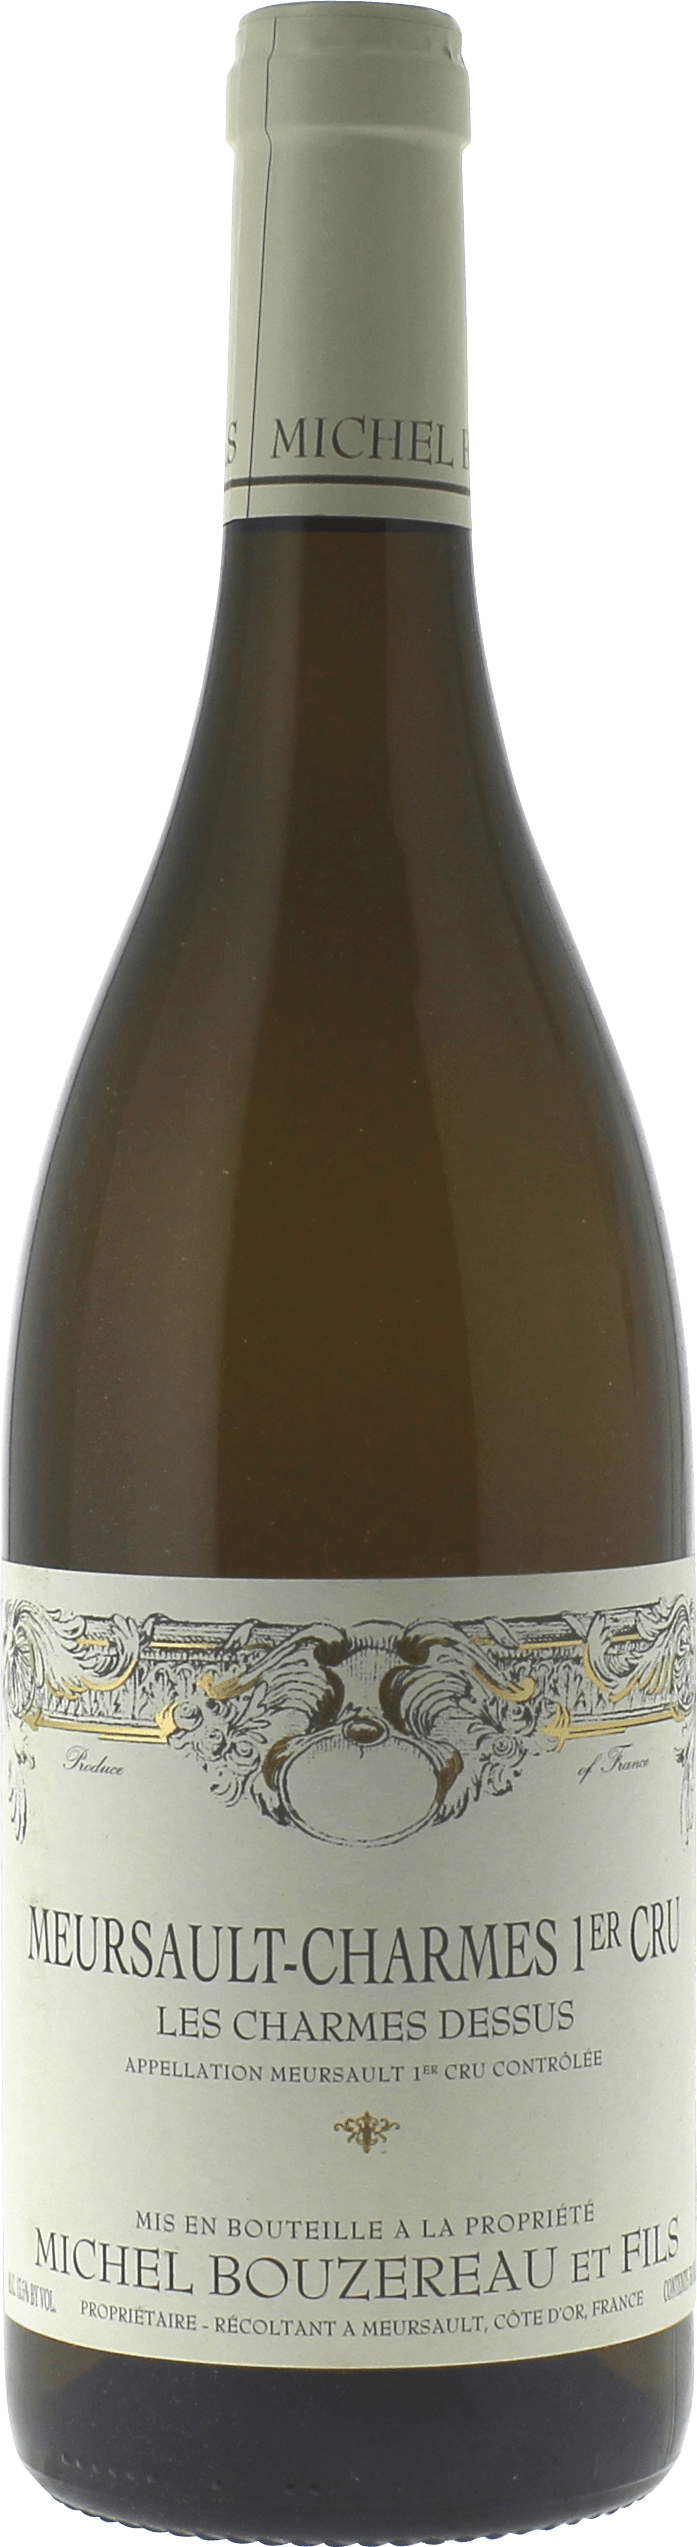 Meursault les charmes dessus 1er cru 2017 Domaine BOUZEREAU Michel et fils, Bourgogne blanc